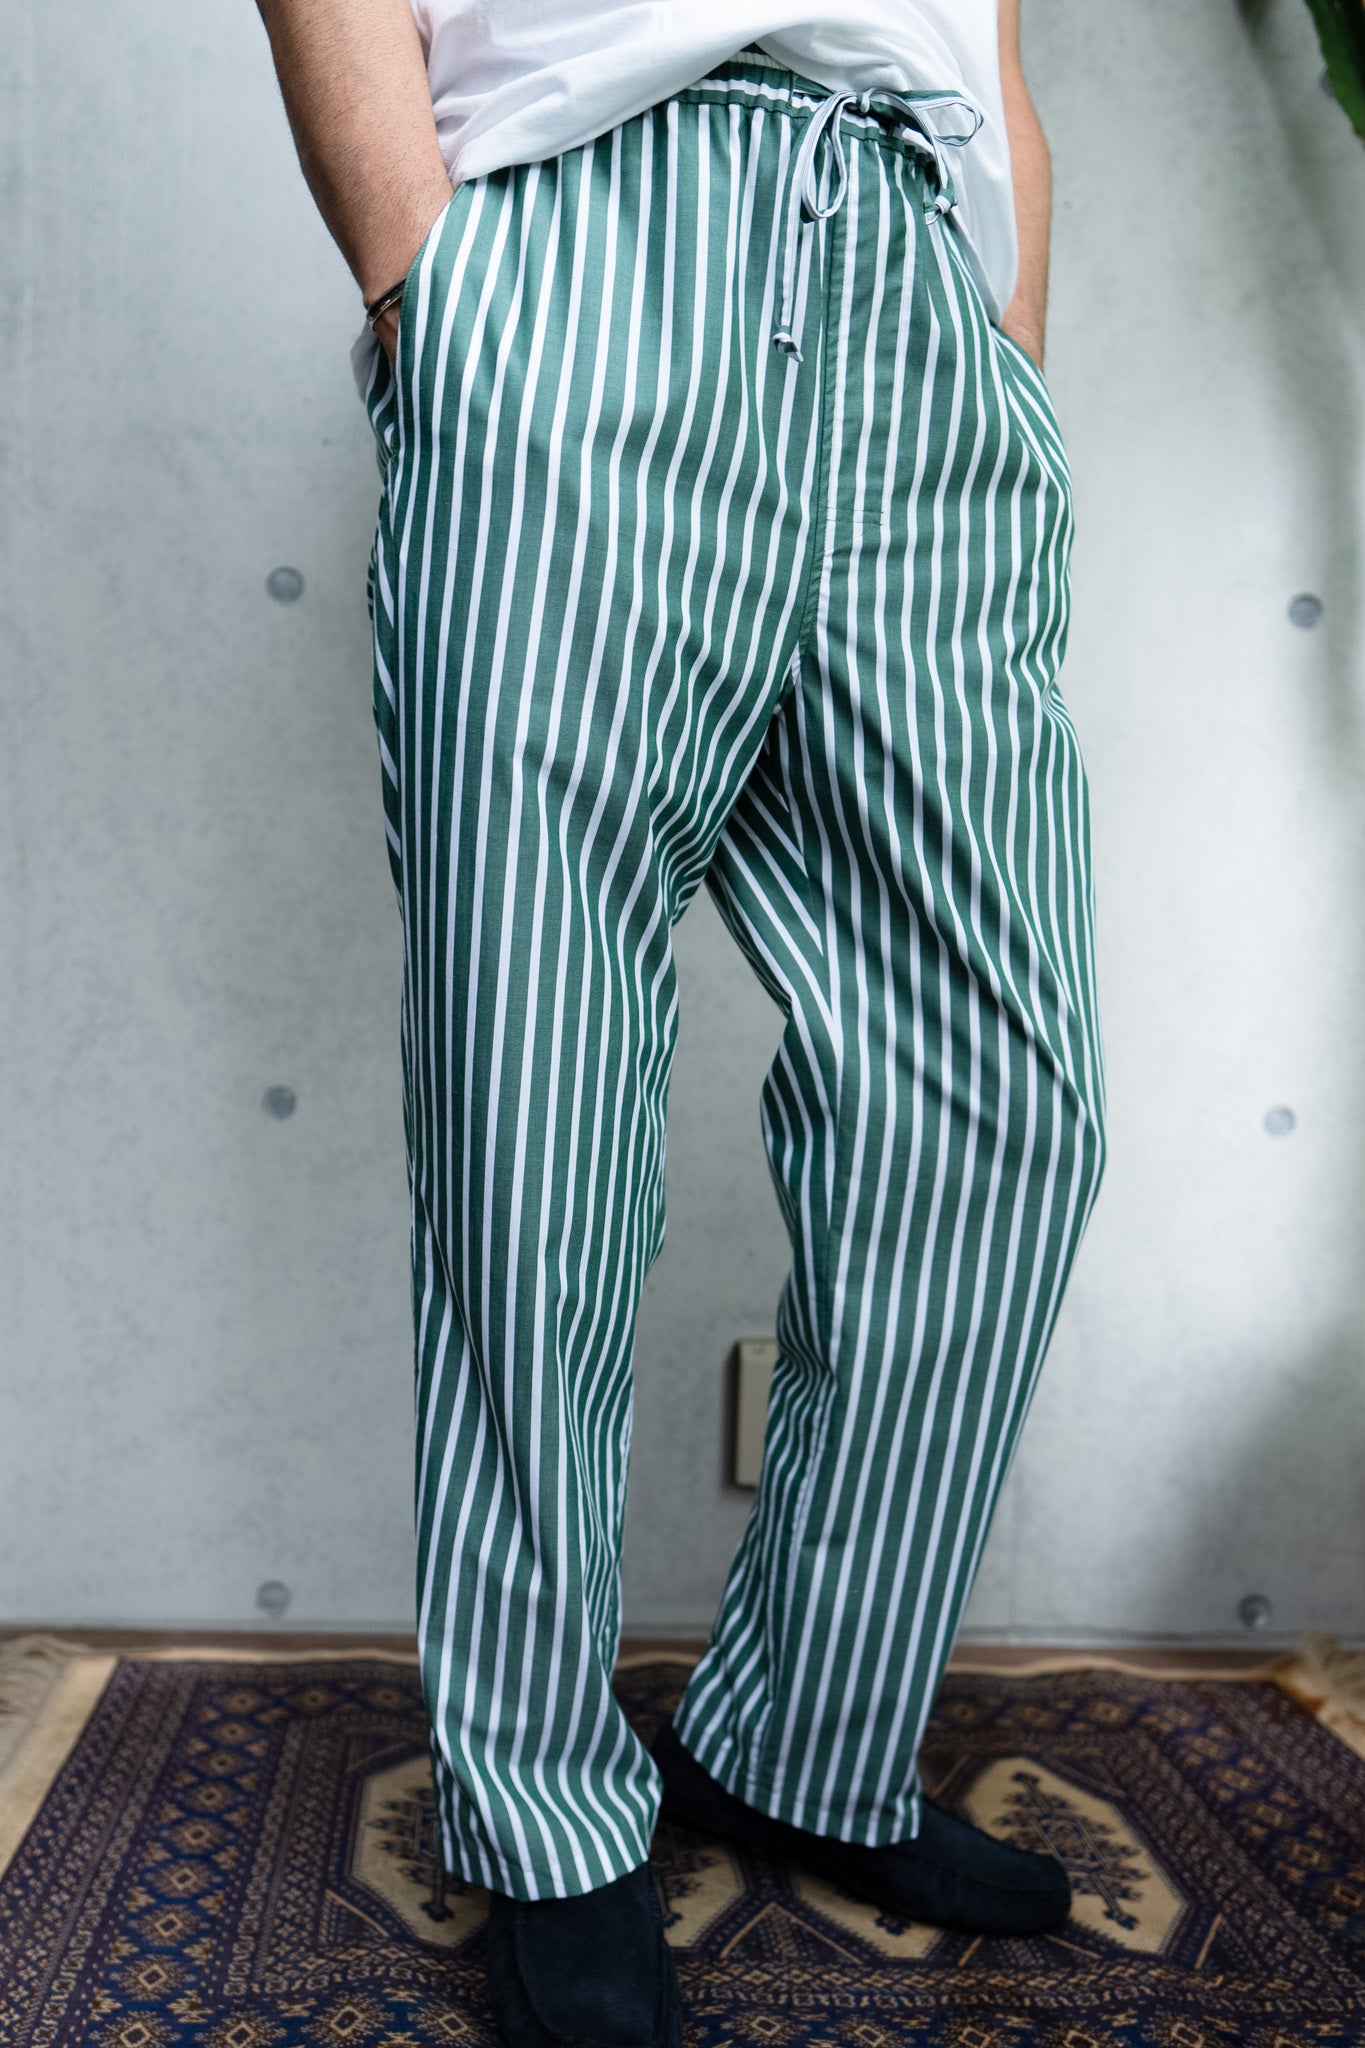 his pants-green stripe